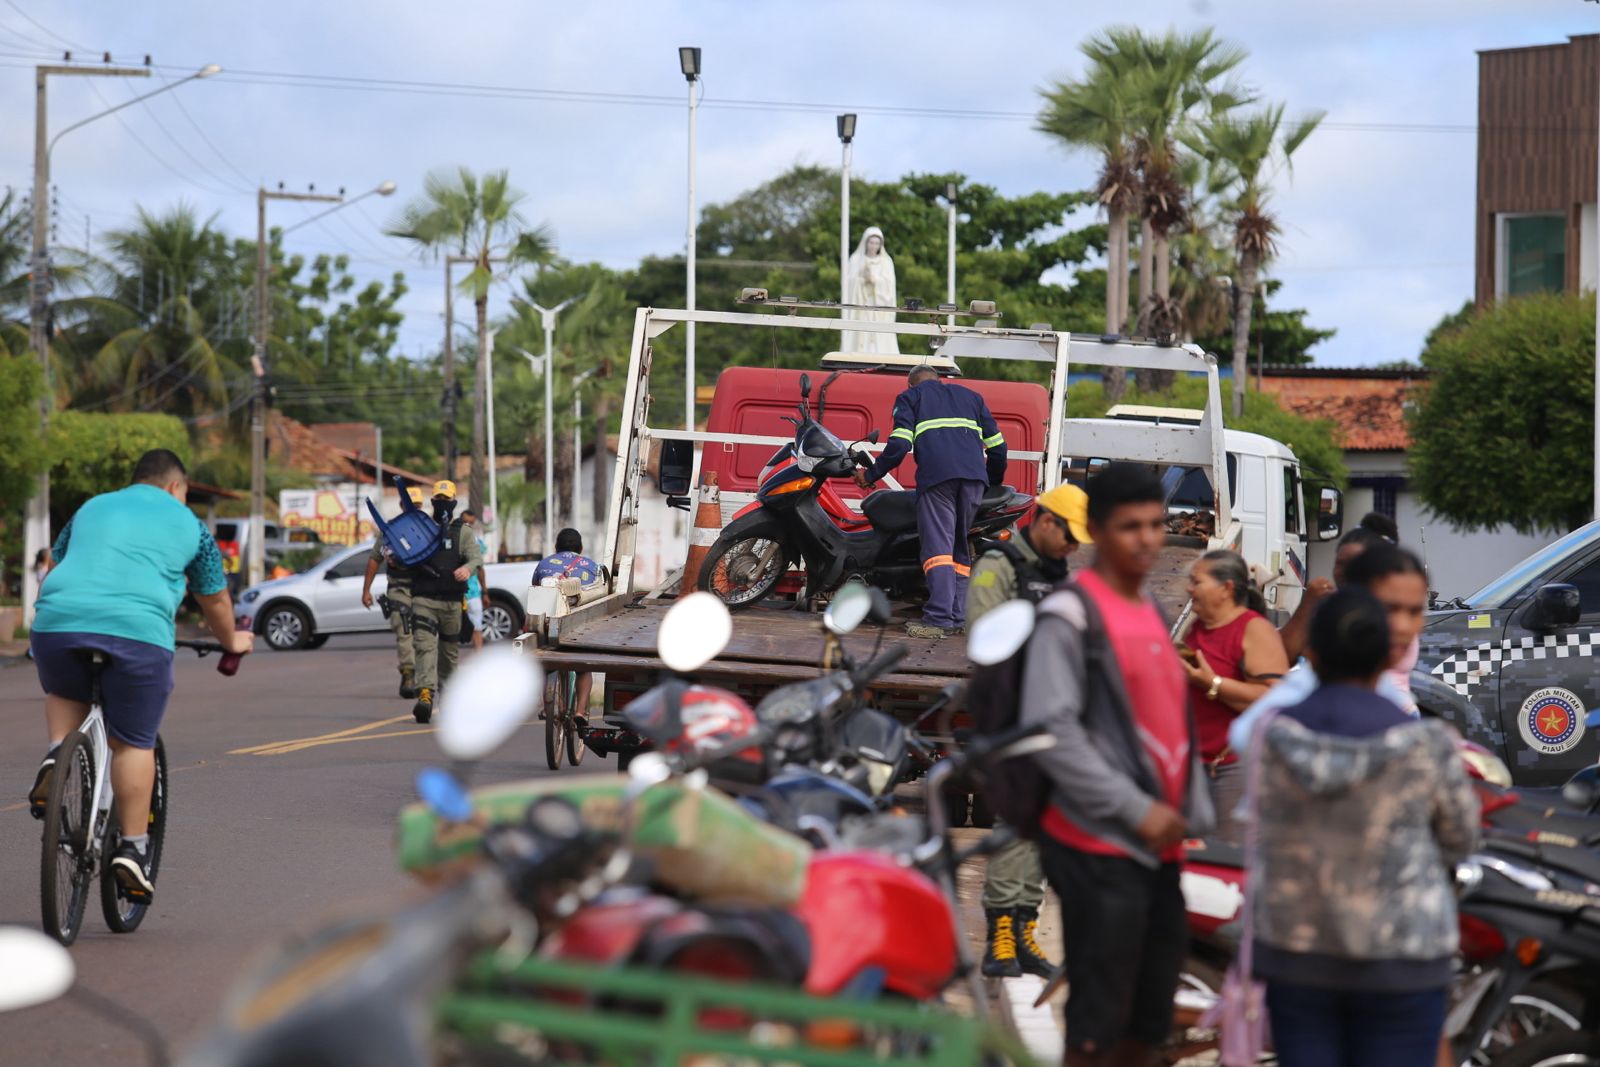 Motocicletas são recuperadas e uma pessoa é presa por embriaguez durante blitzen no Piauí